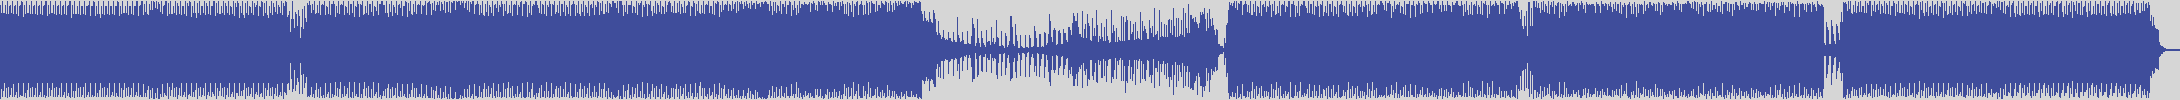 nf_boyz_records [NFY002] Radikal Guyz - Euphoriase [Club Mix] audio wave form